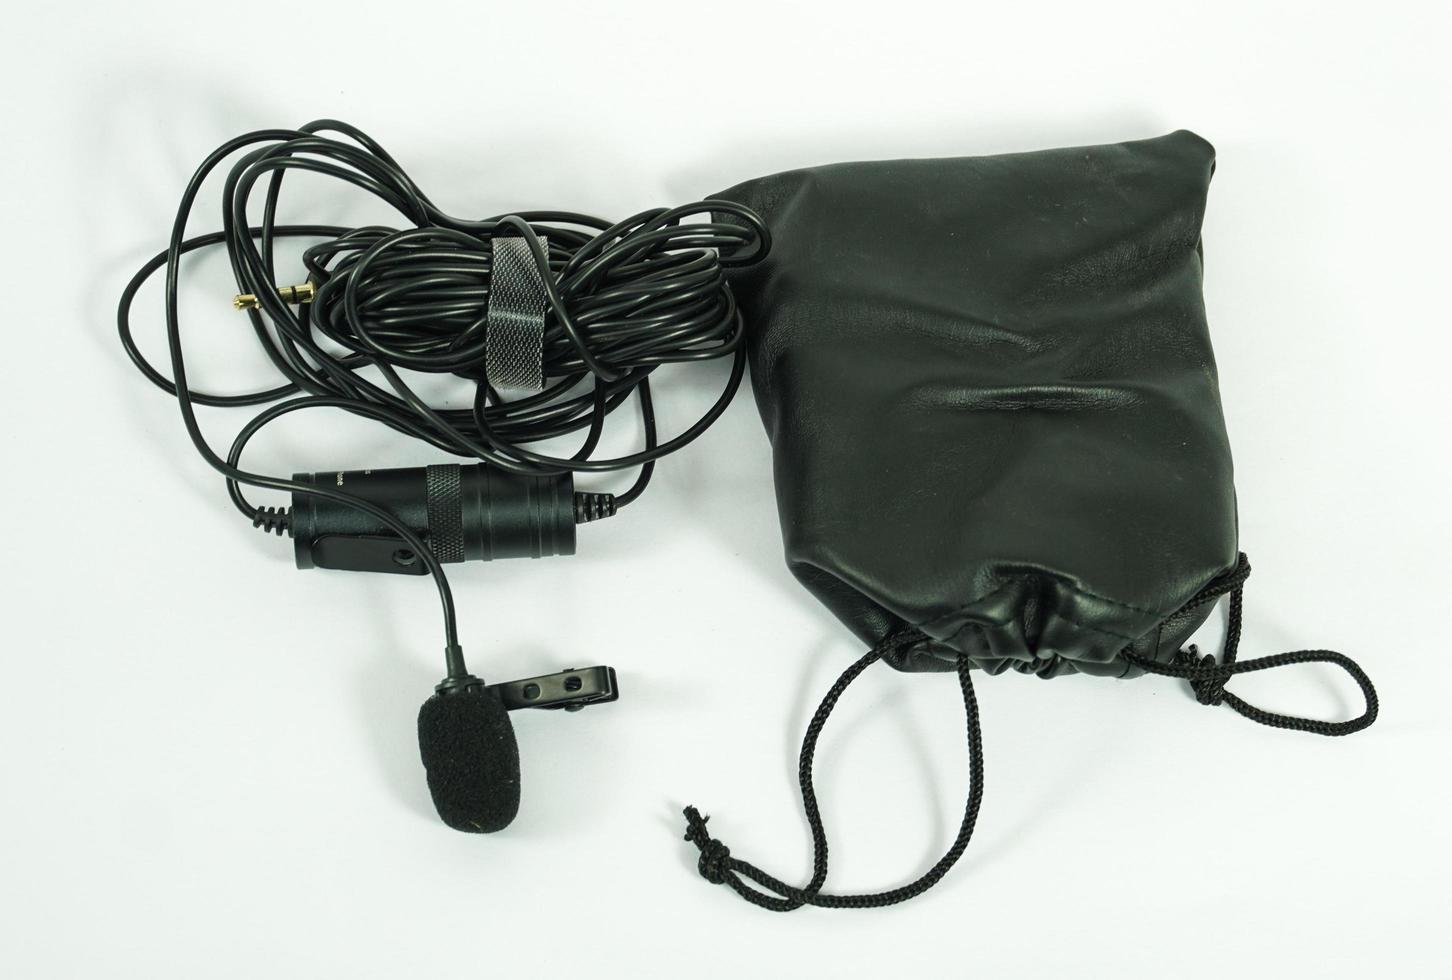 microfone de lapela em uma imagem de microfone de bolsa em fundo branco foto